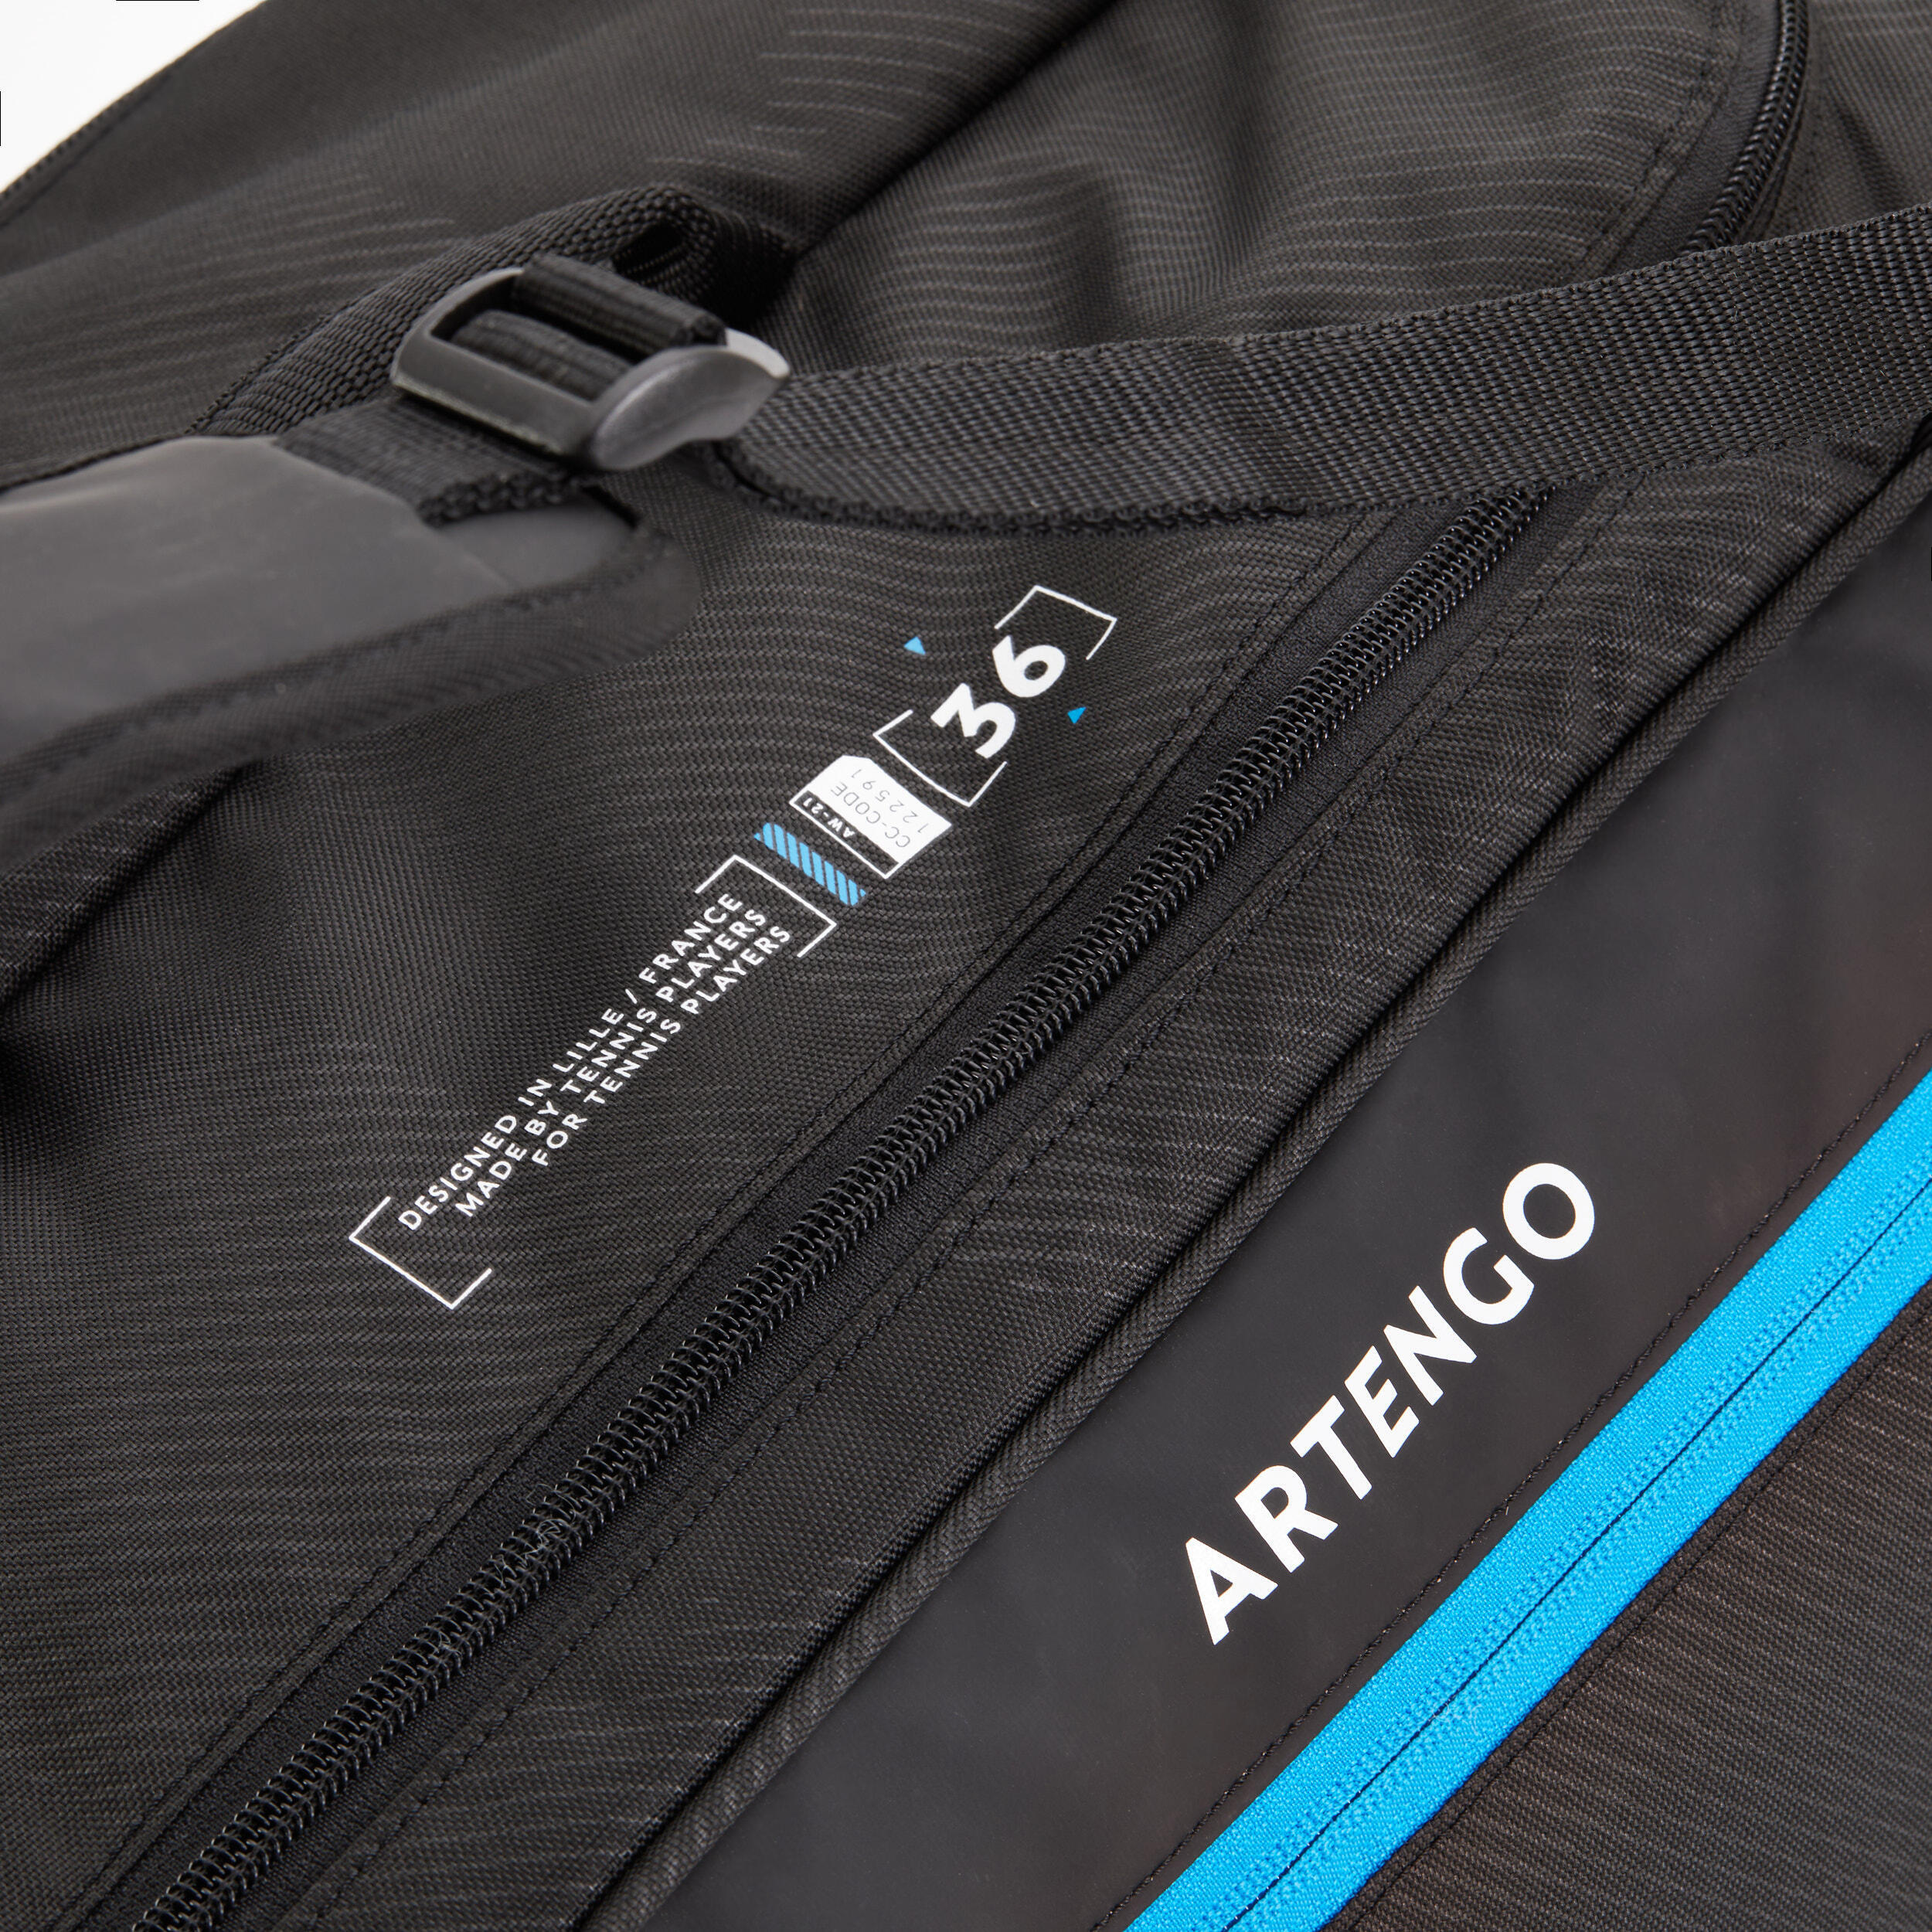 Теннисная сумка/рюкзак - 9R Team черный/синий ARTENGO, темно-голубой/черный теннисная сумка рюкзак head djokovic 9r supercombi серый черный